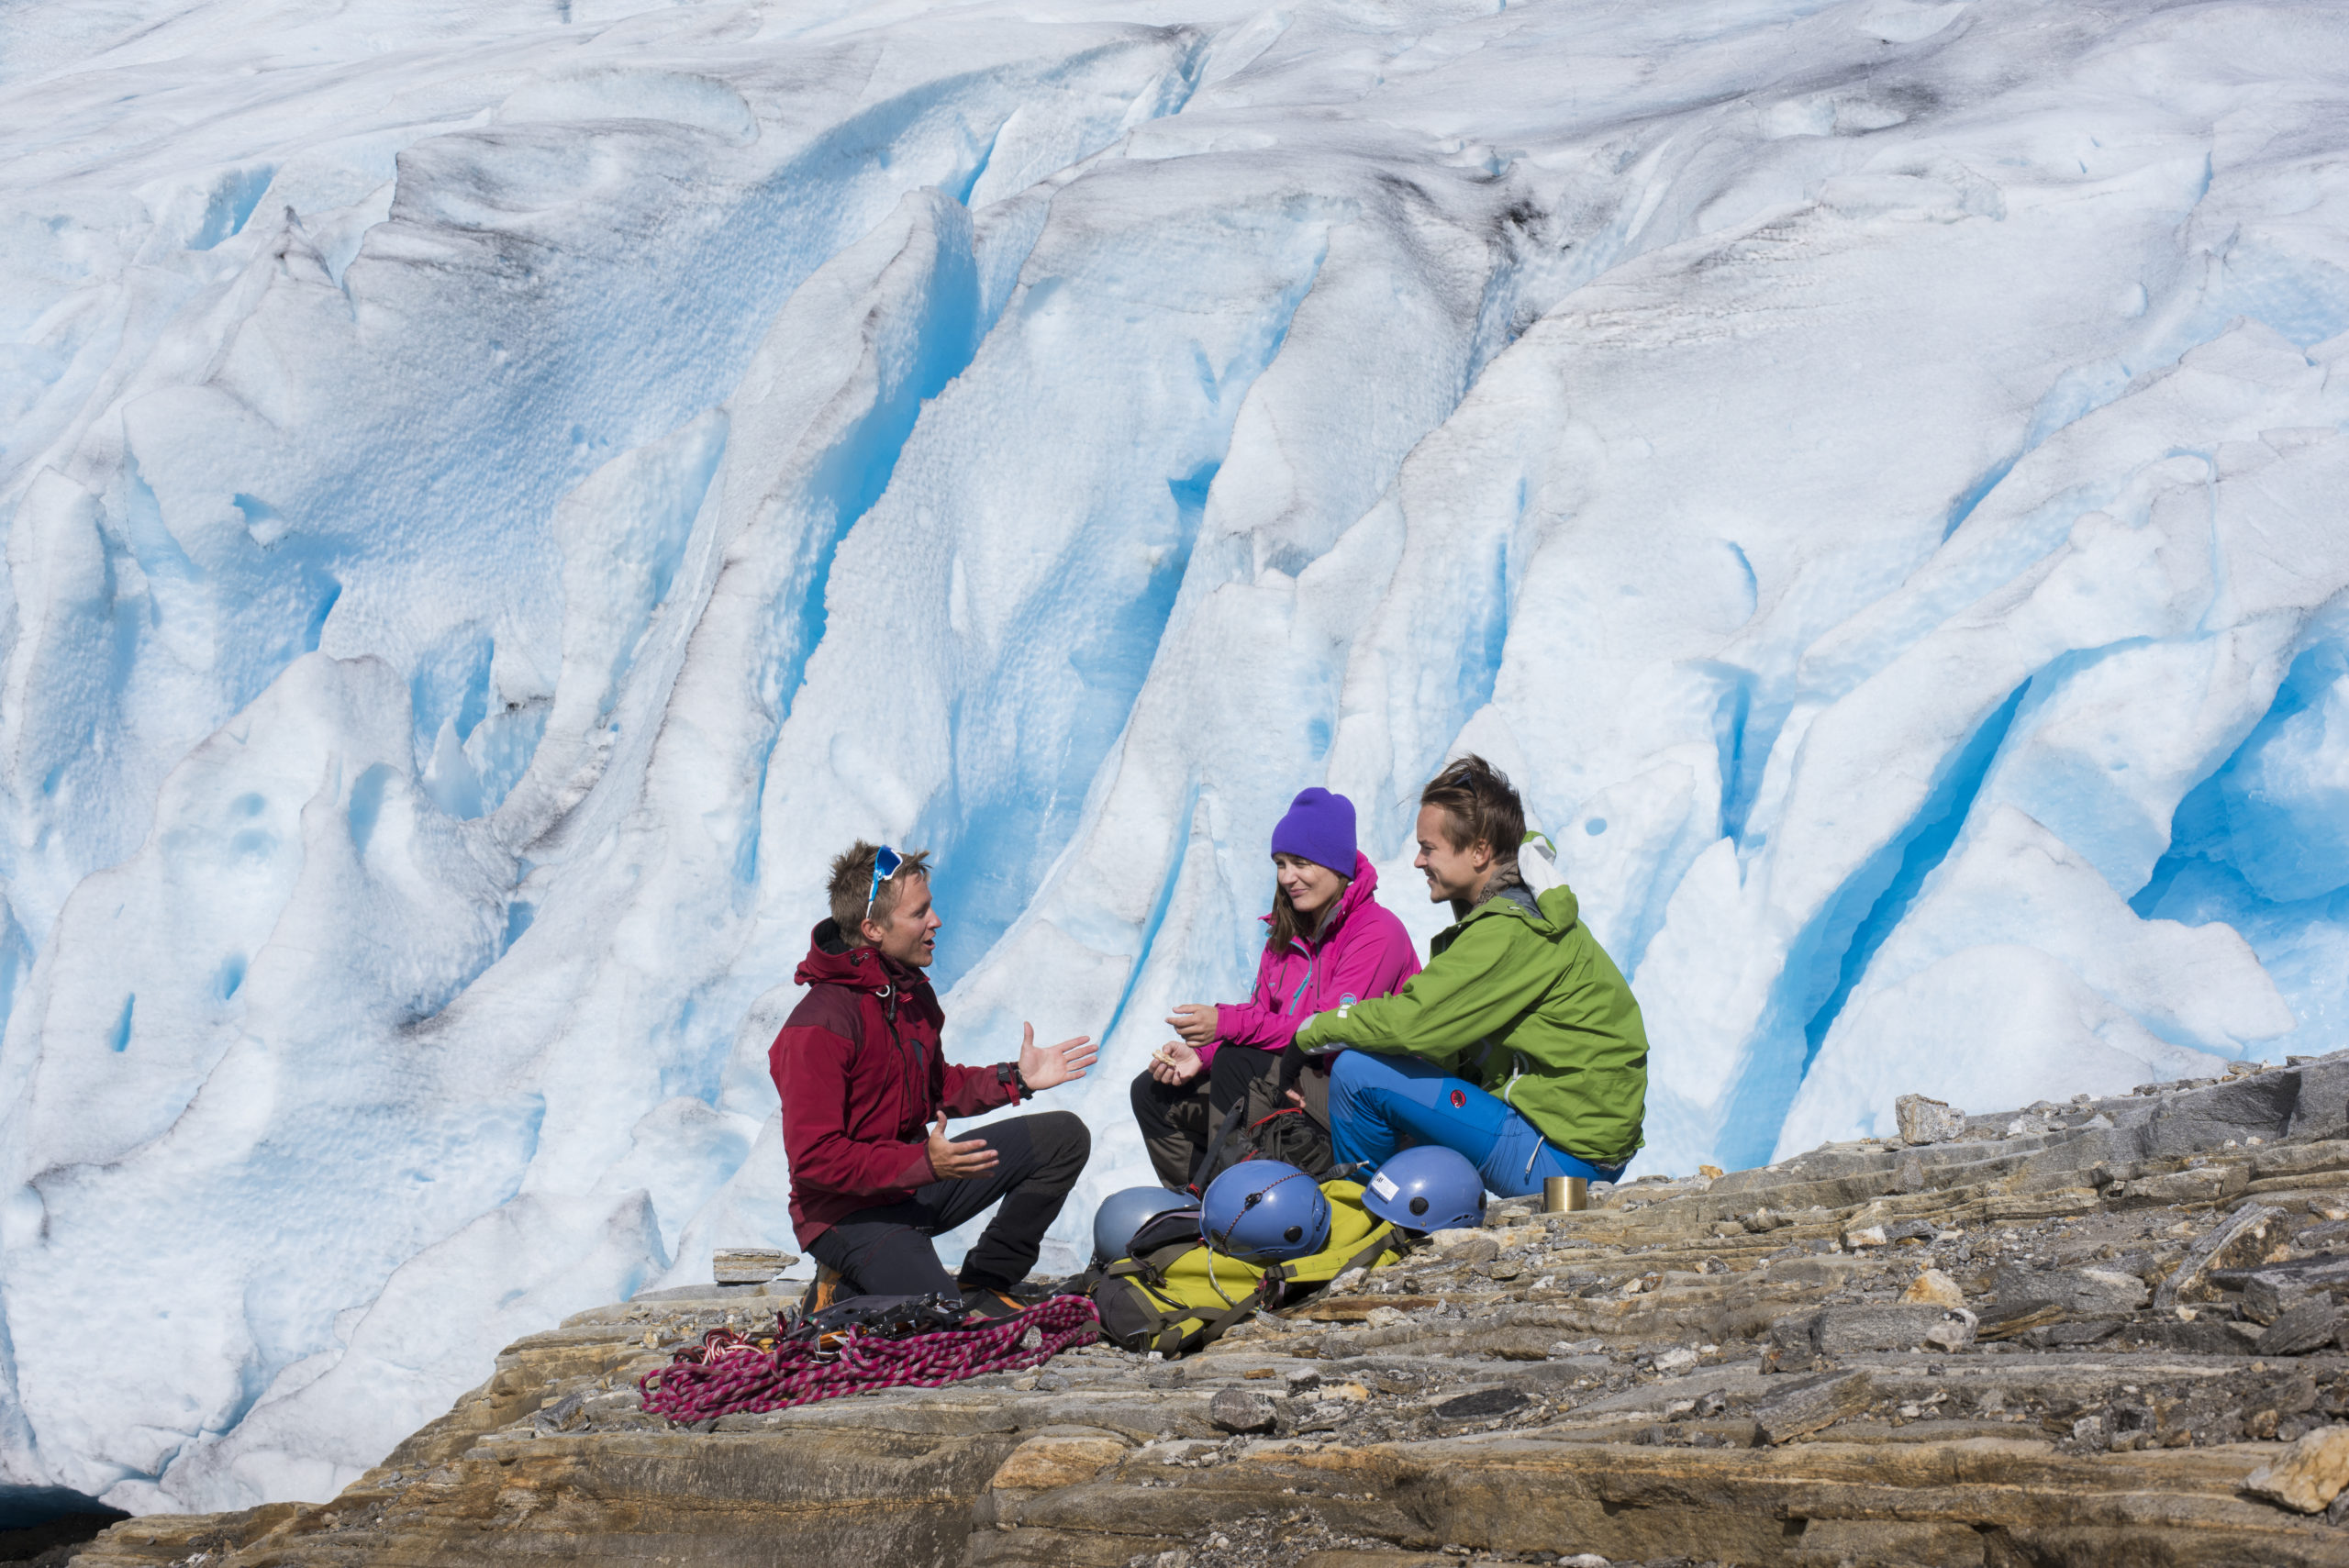 En instruktør forklarer hvordan man skal gå på isbre, med isbre i bakgrunnen